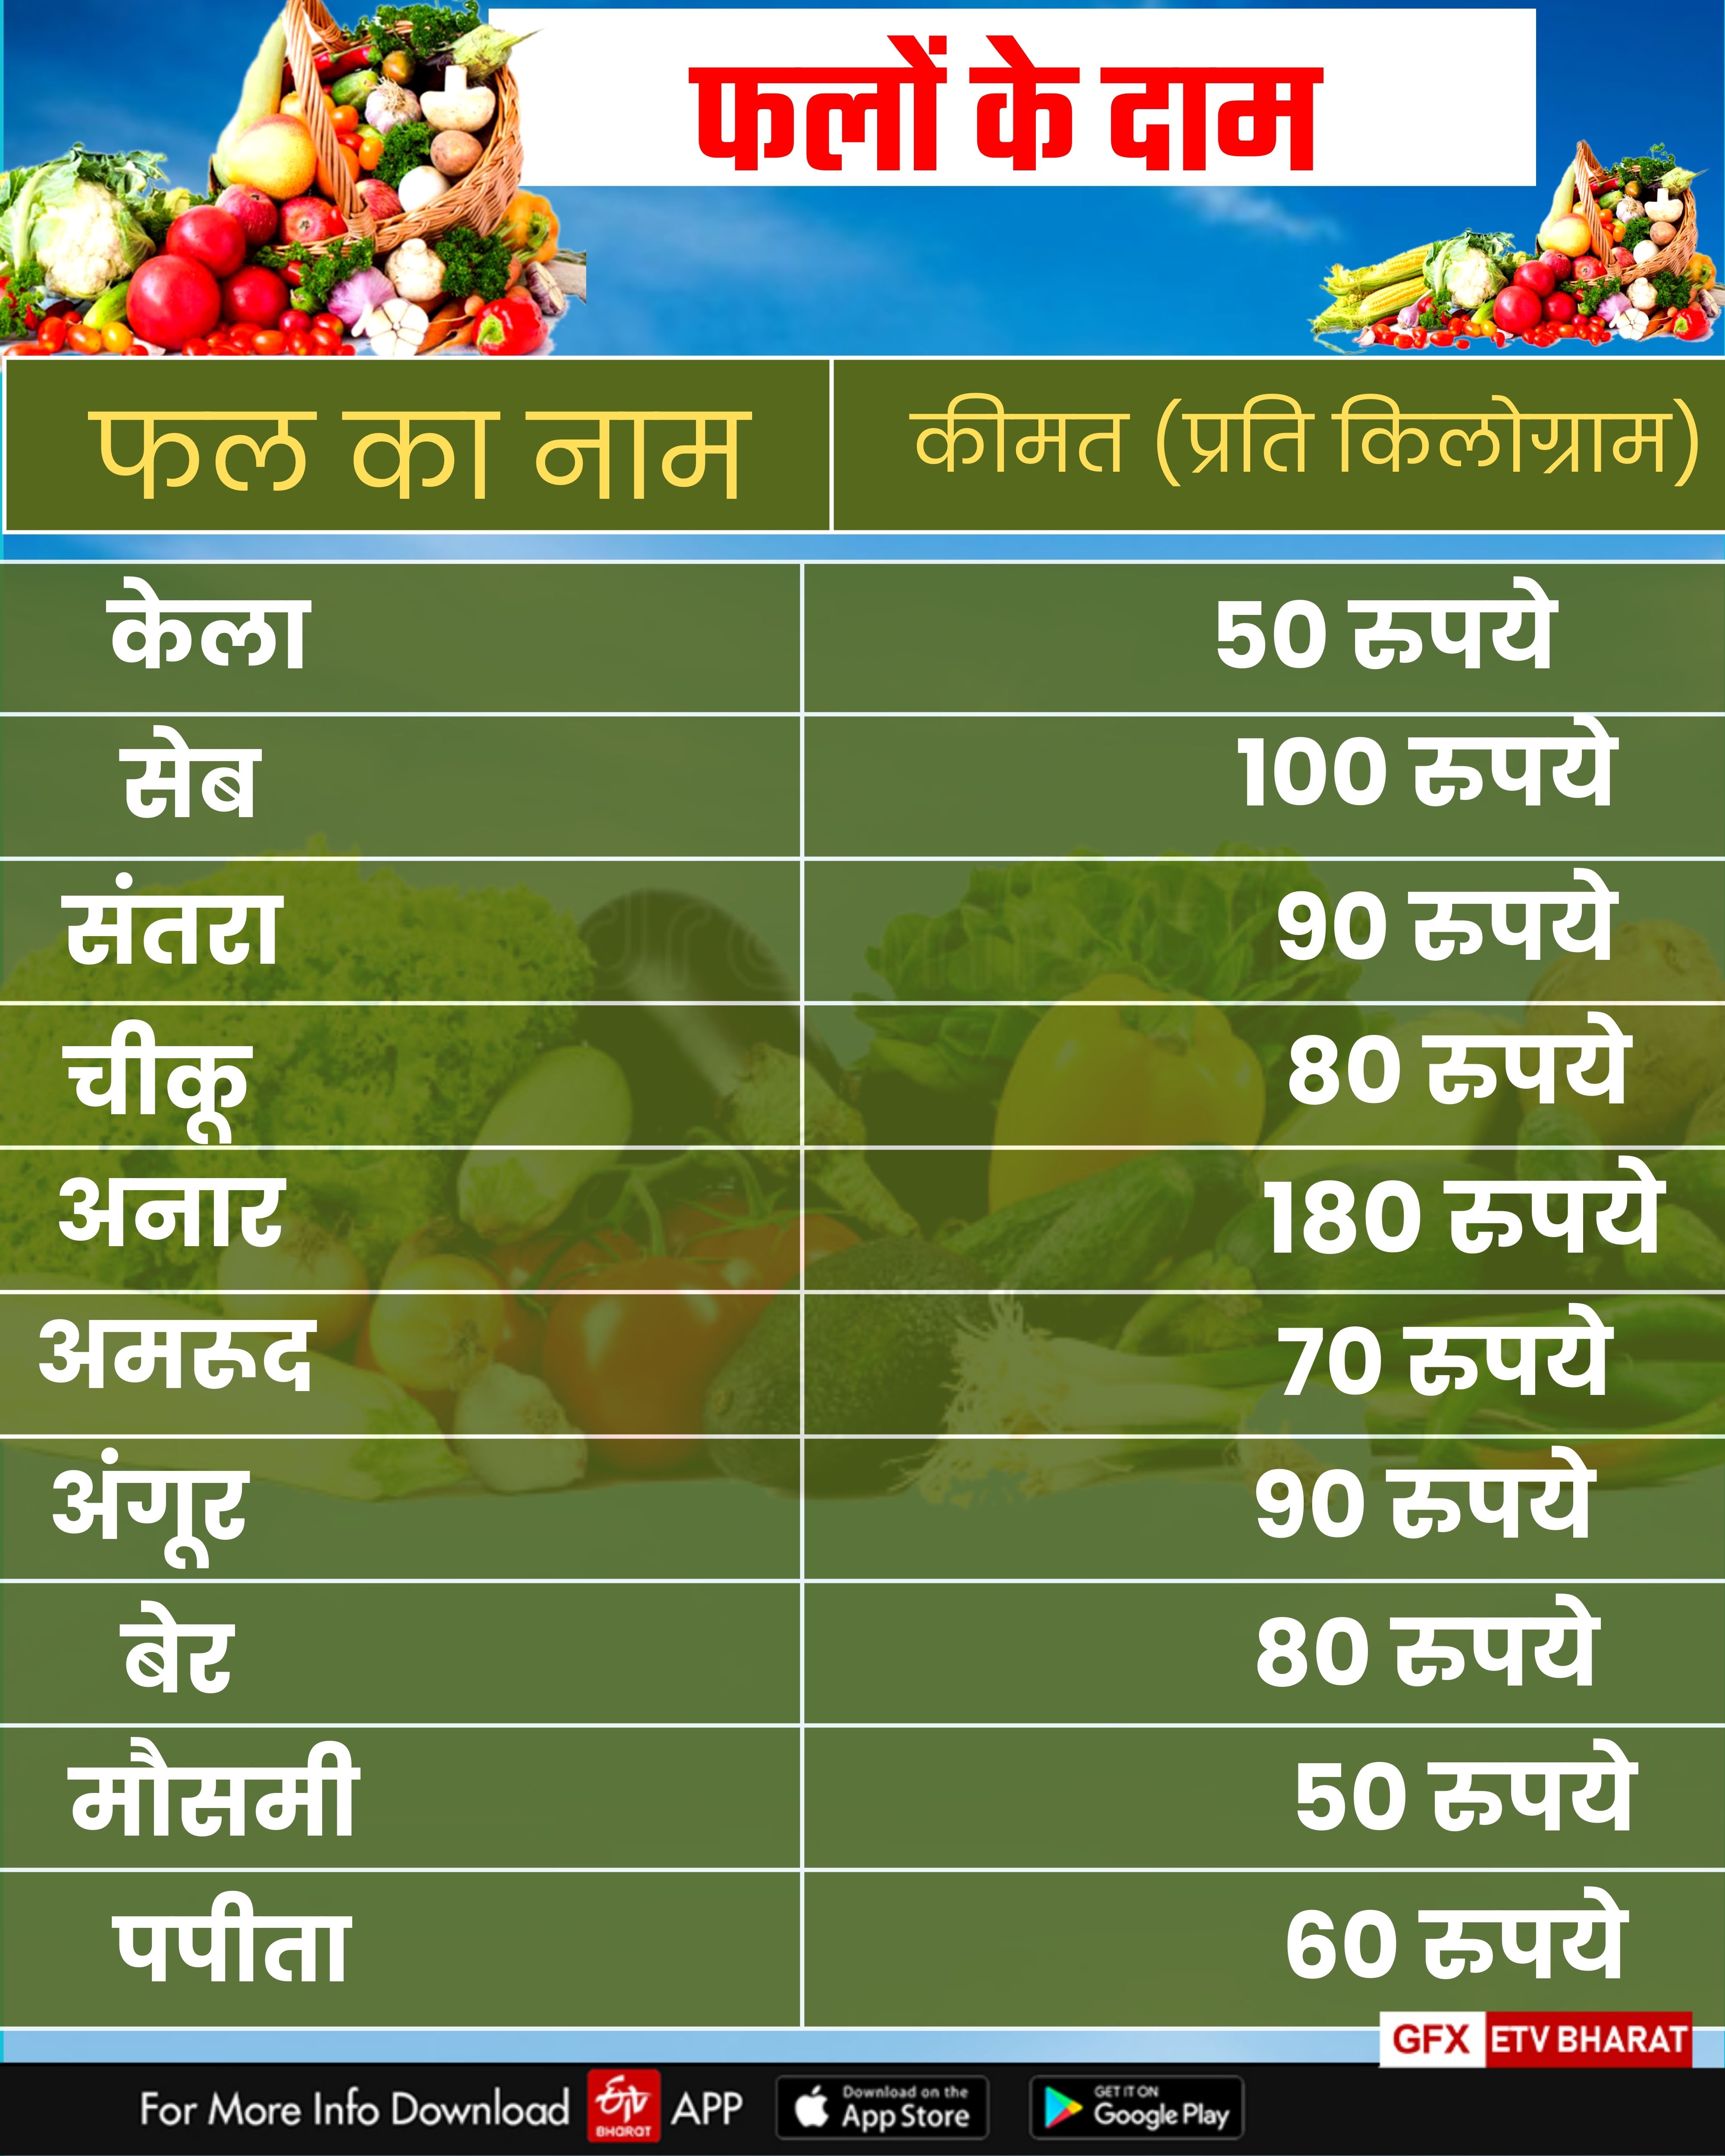 Fruits  Price in Haryana